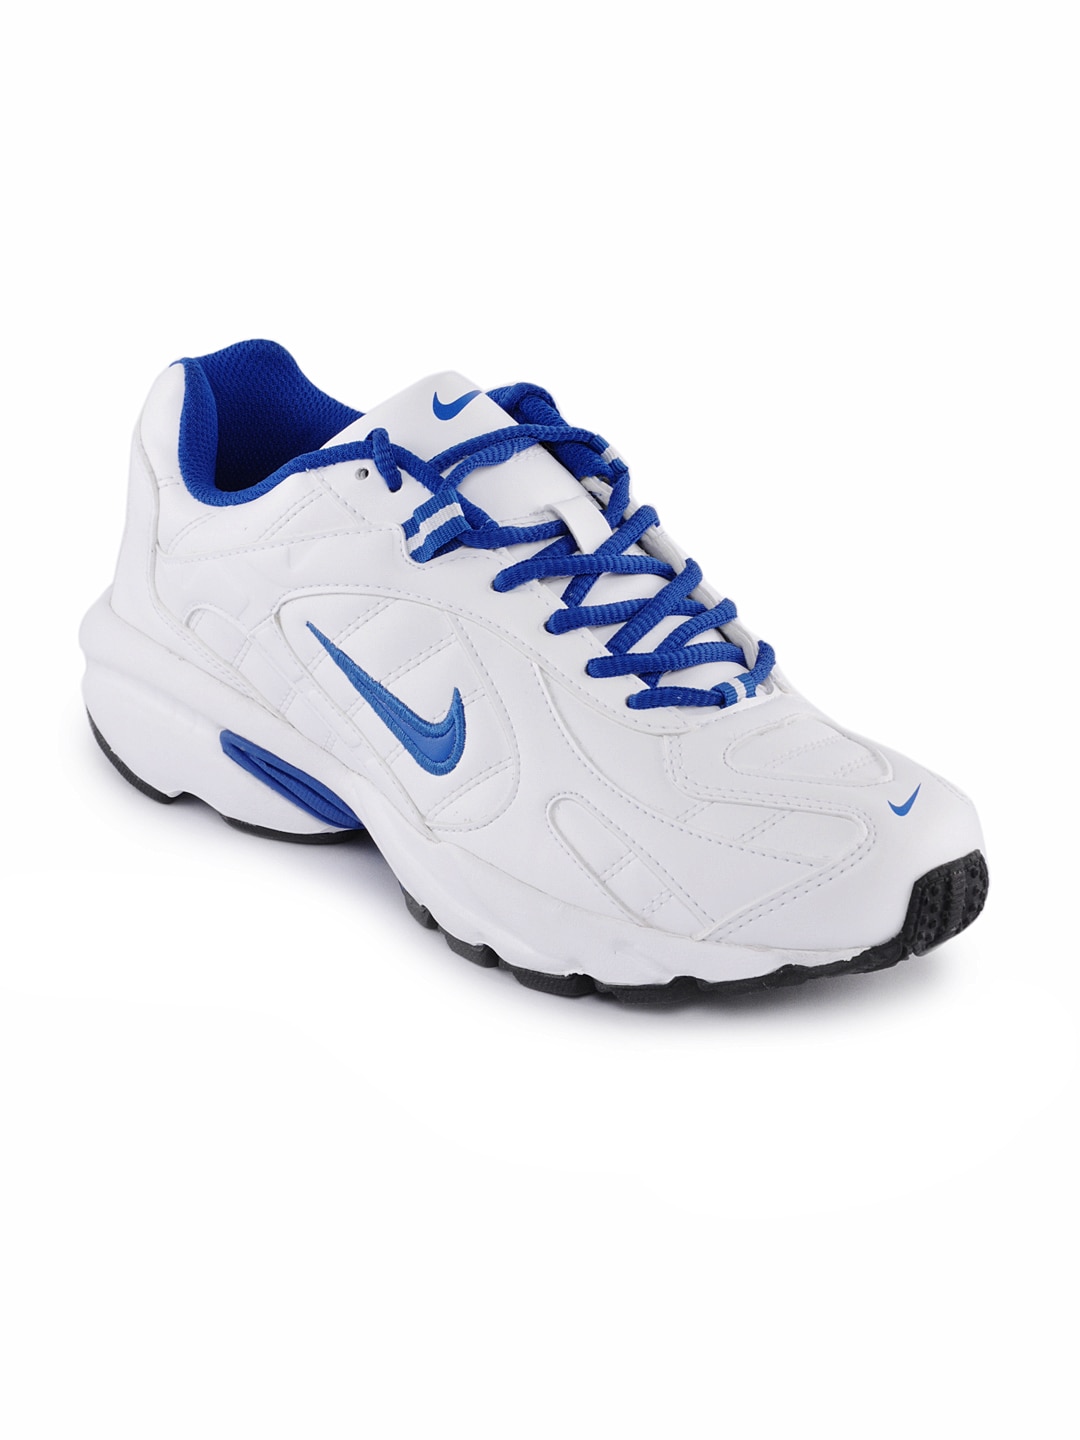 Nike Men 2.04 SL White Sports Shoes